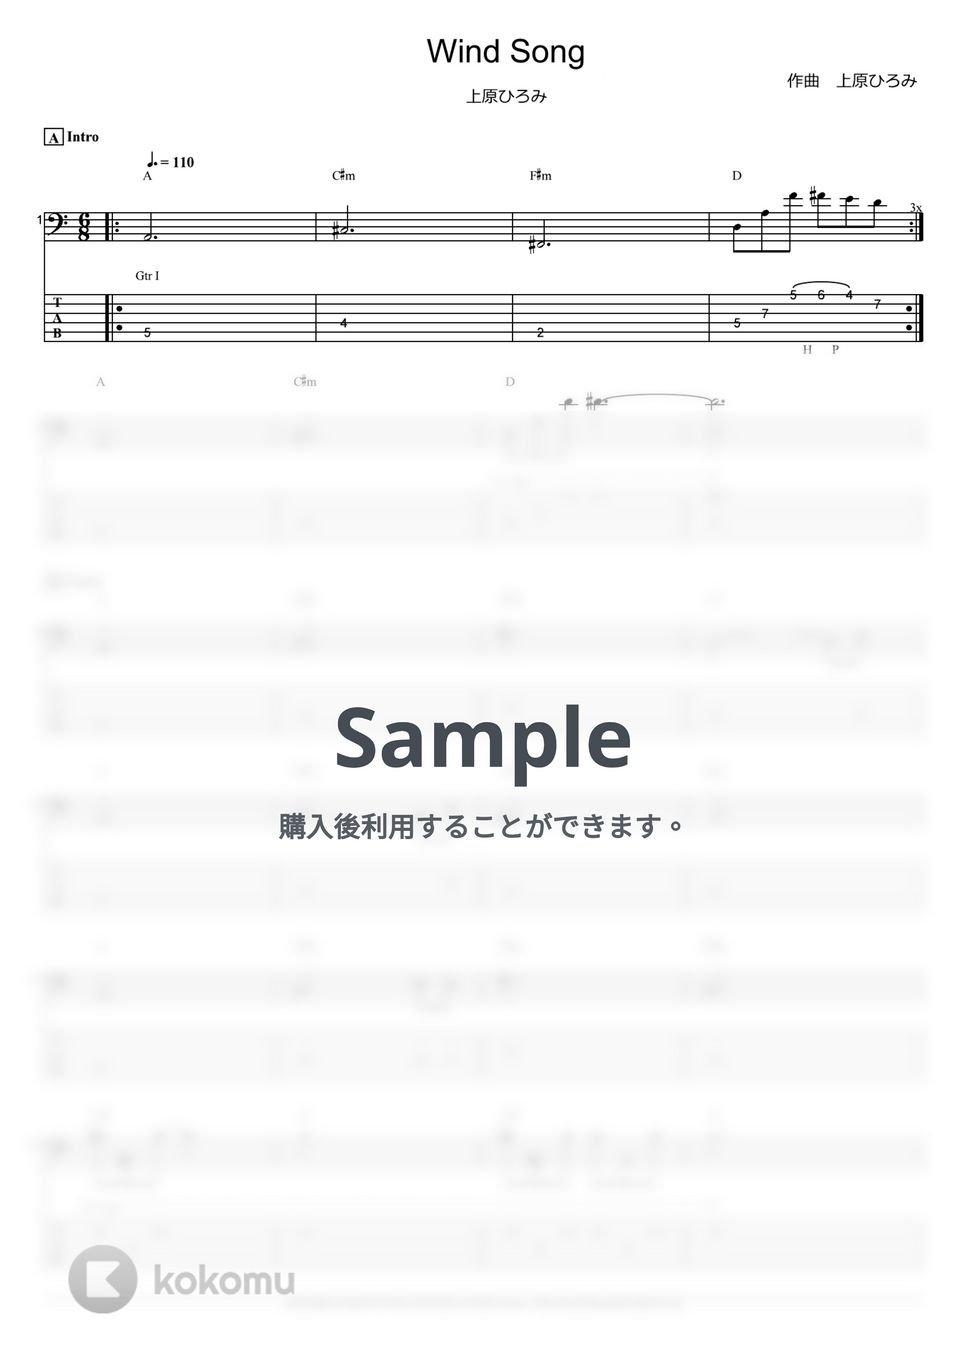 上原ひろみ - Wind Song (ベース Tab譜 6弦) by T’s bass score